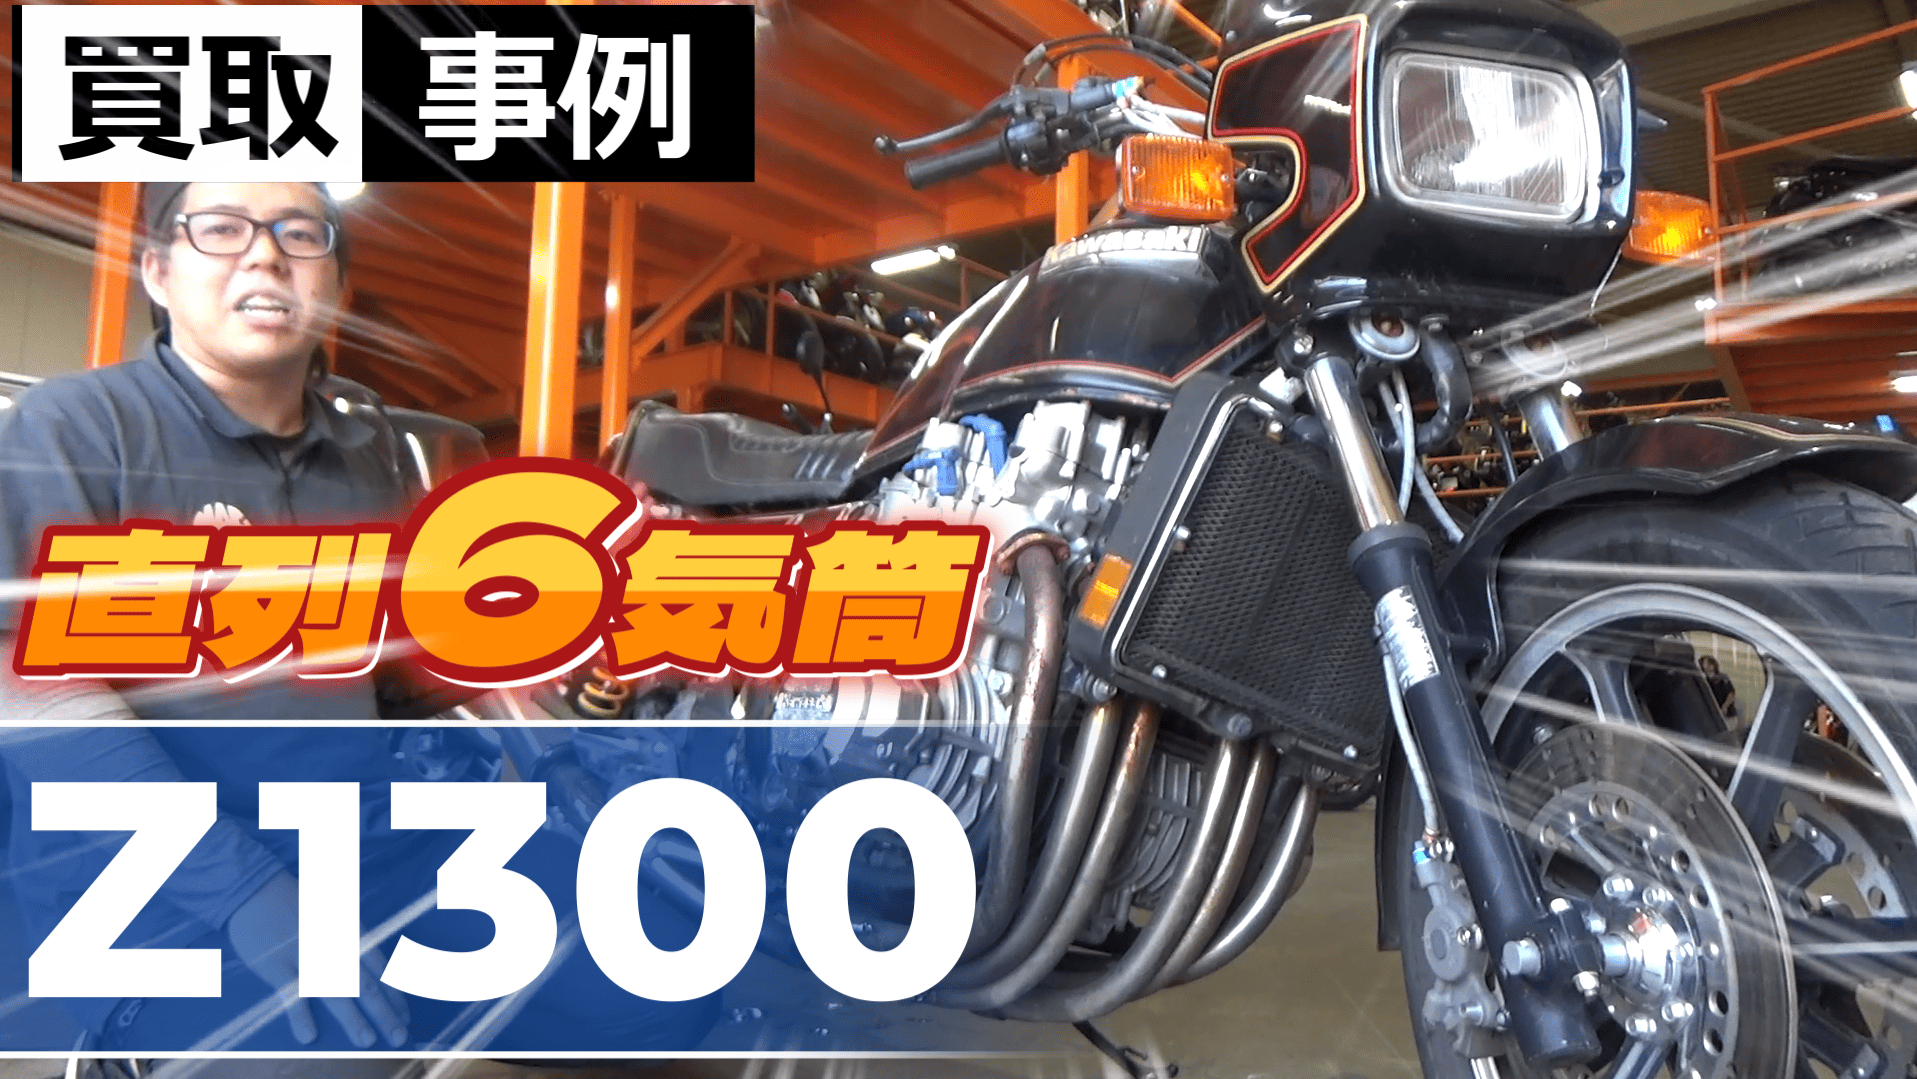 バイク買取事例【直列6気筒】KZ1300